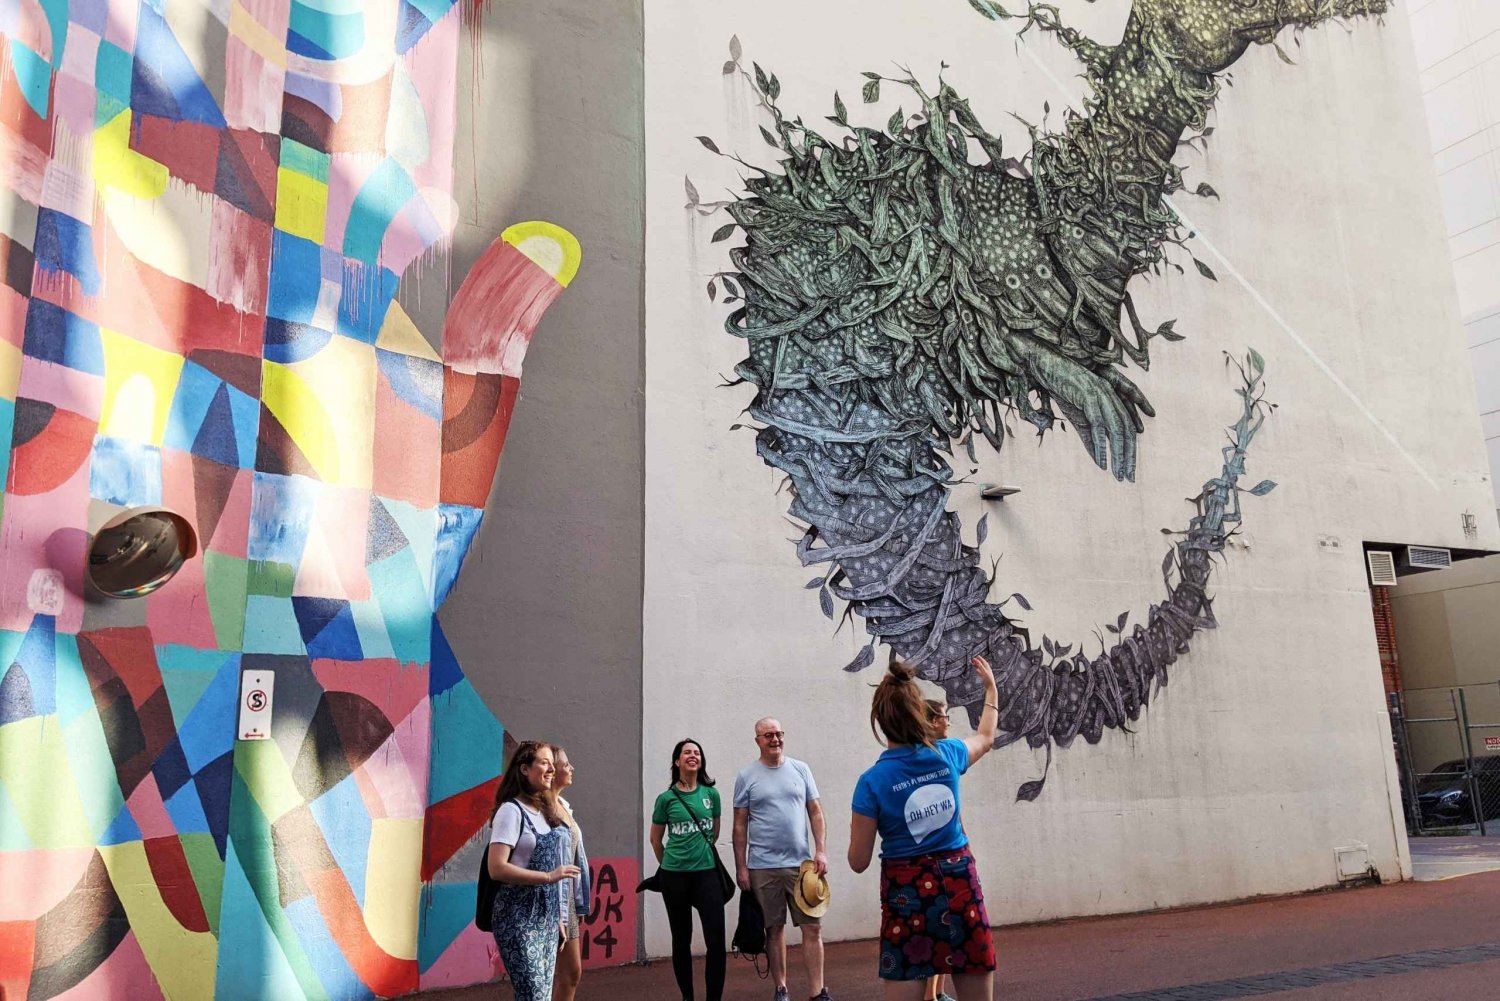 Perth: Street Art Tour ft. Murals, Sculptures and Graffiti